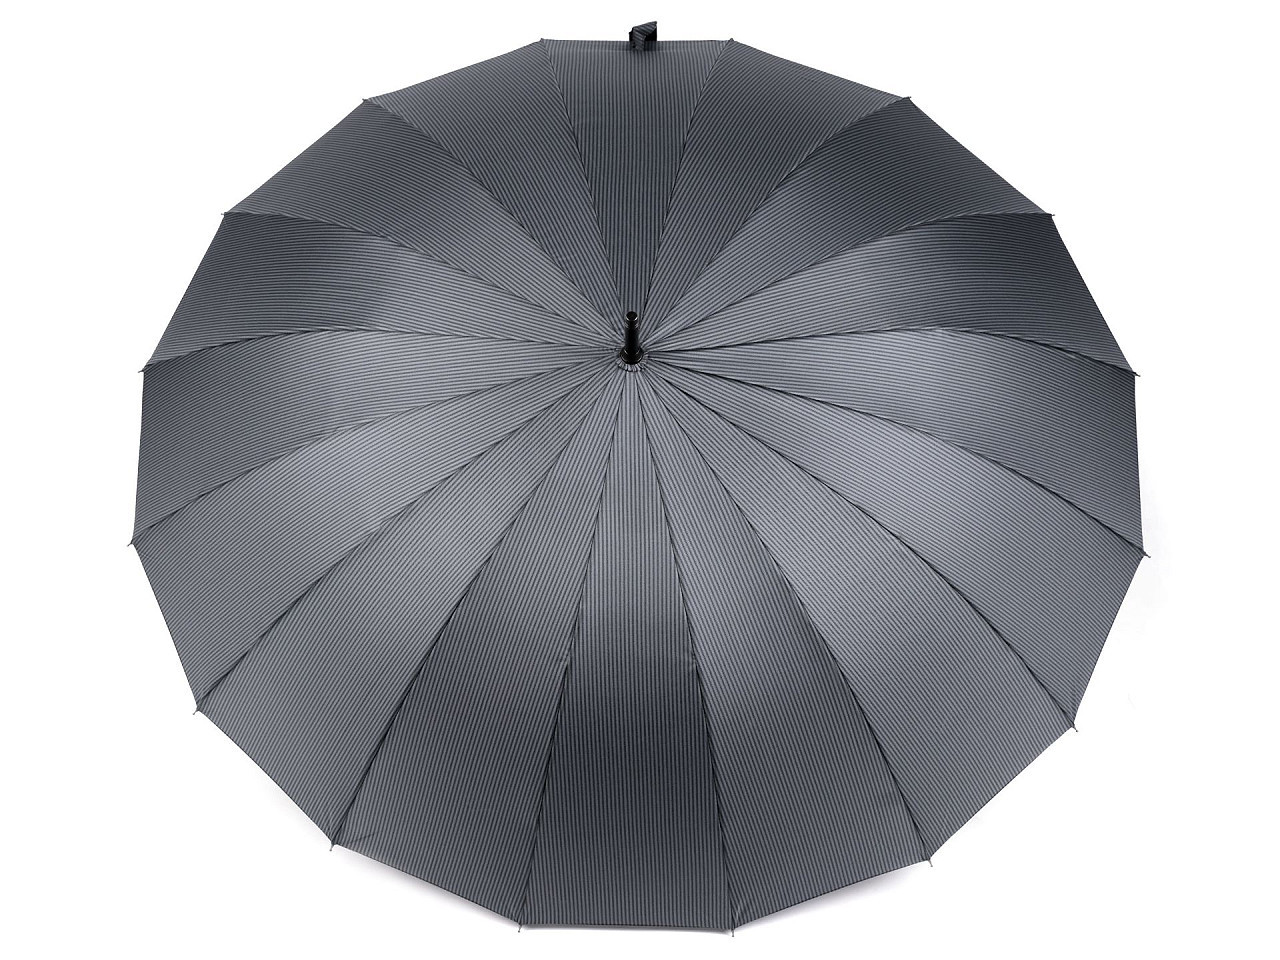 Velký rodinný vystřelovací deštník, barva 3 šedá proužky